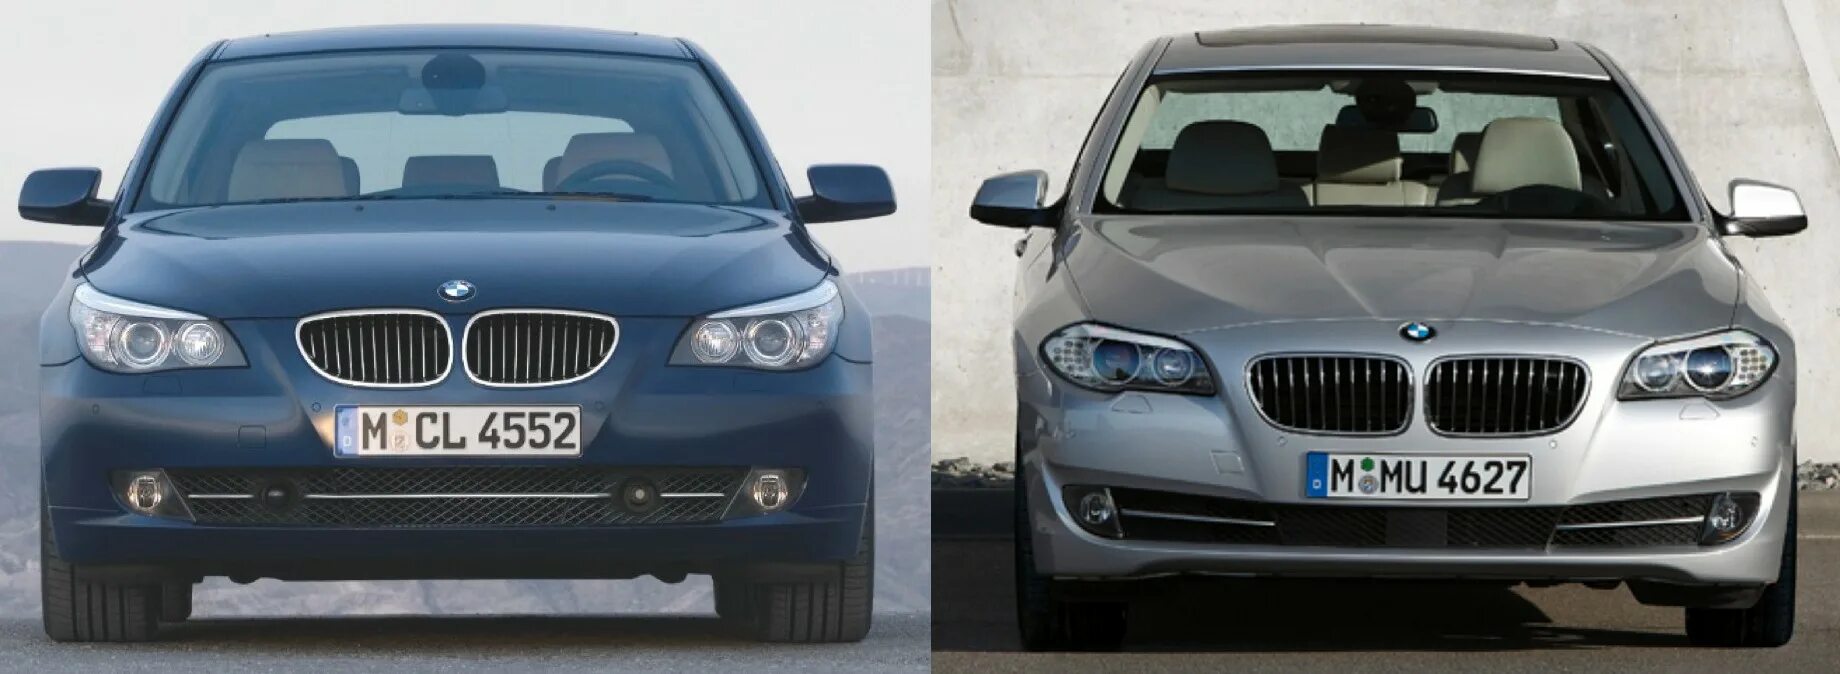 65 v 10. BMW e60 vs f10. BMW e60 vs BMW f10. BMW e60 Facelift. BMW f10 vs f 50.